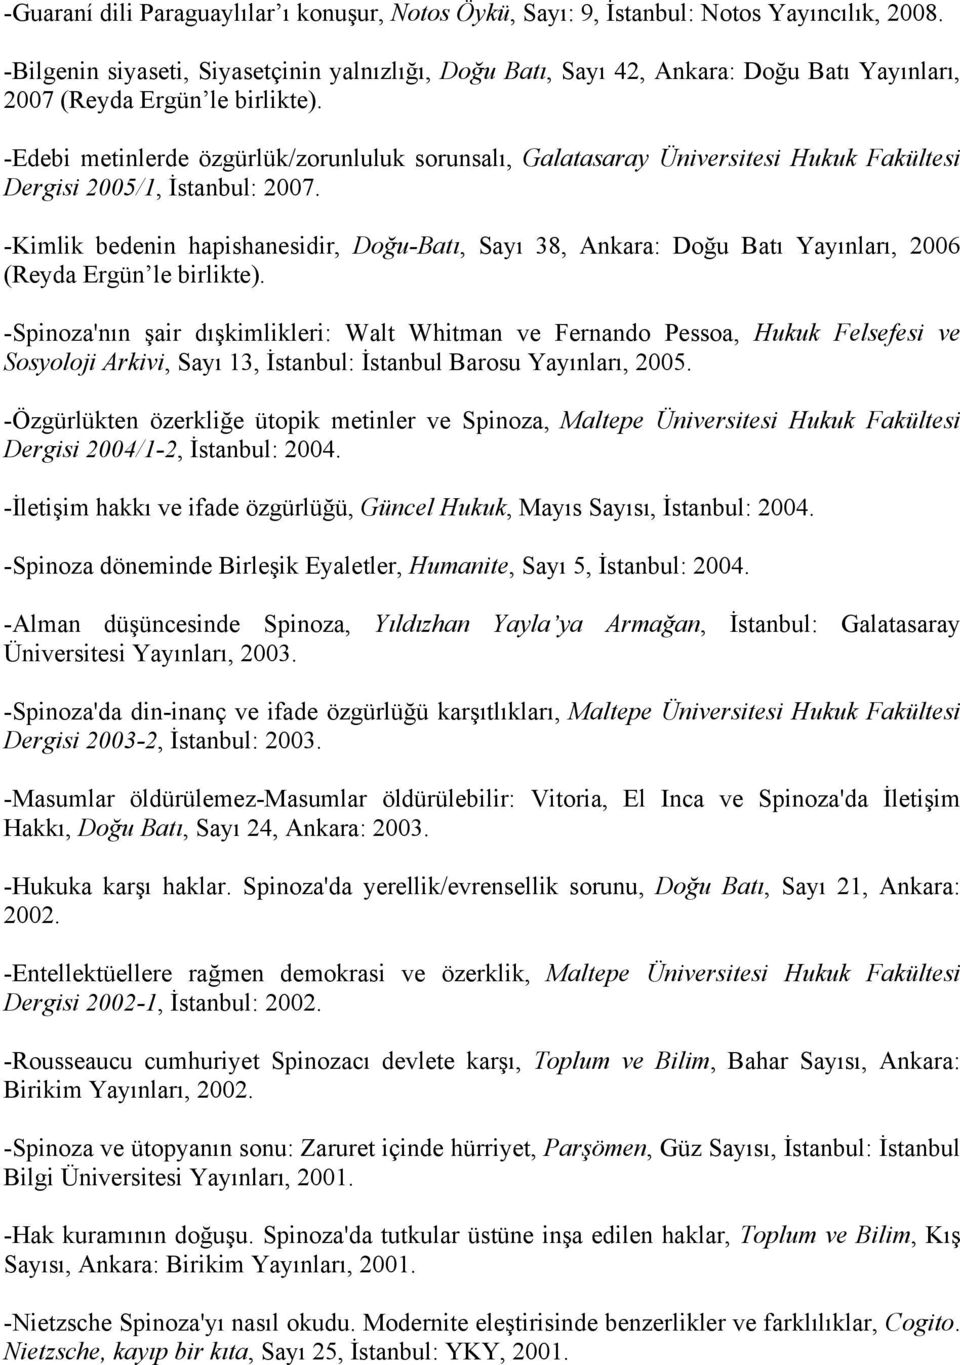 -Edebi metinlerde özgürlük/zorunluluk sorunsalı, Galatasaray Üniversitesi Hukuk Fakültesi Dergisi 2005/1, İstanbul: 2007.